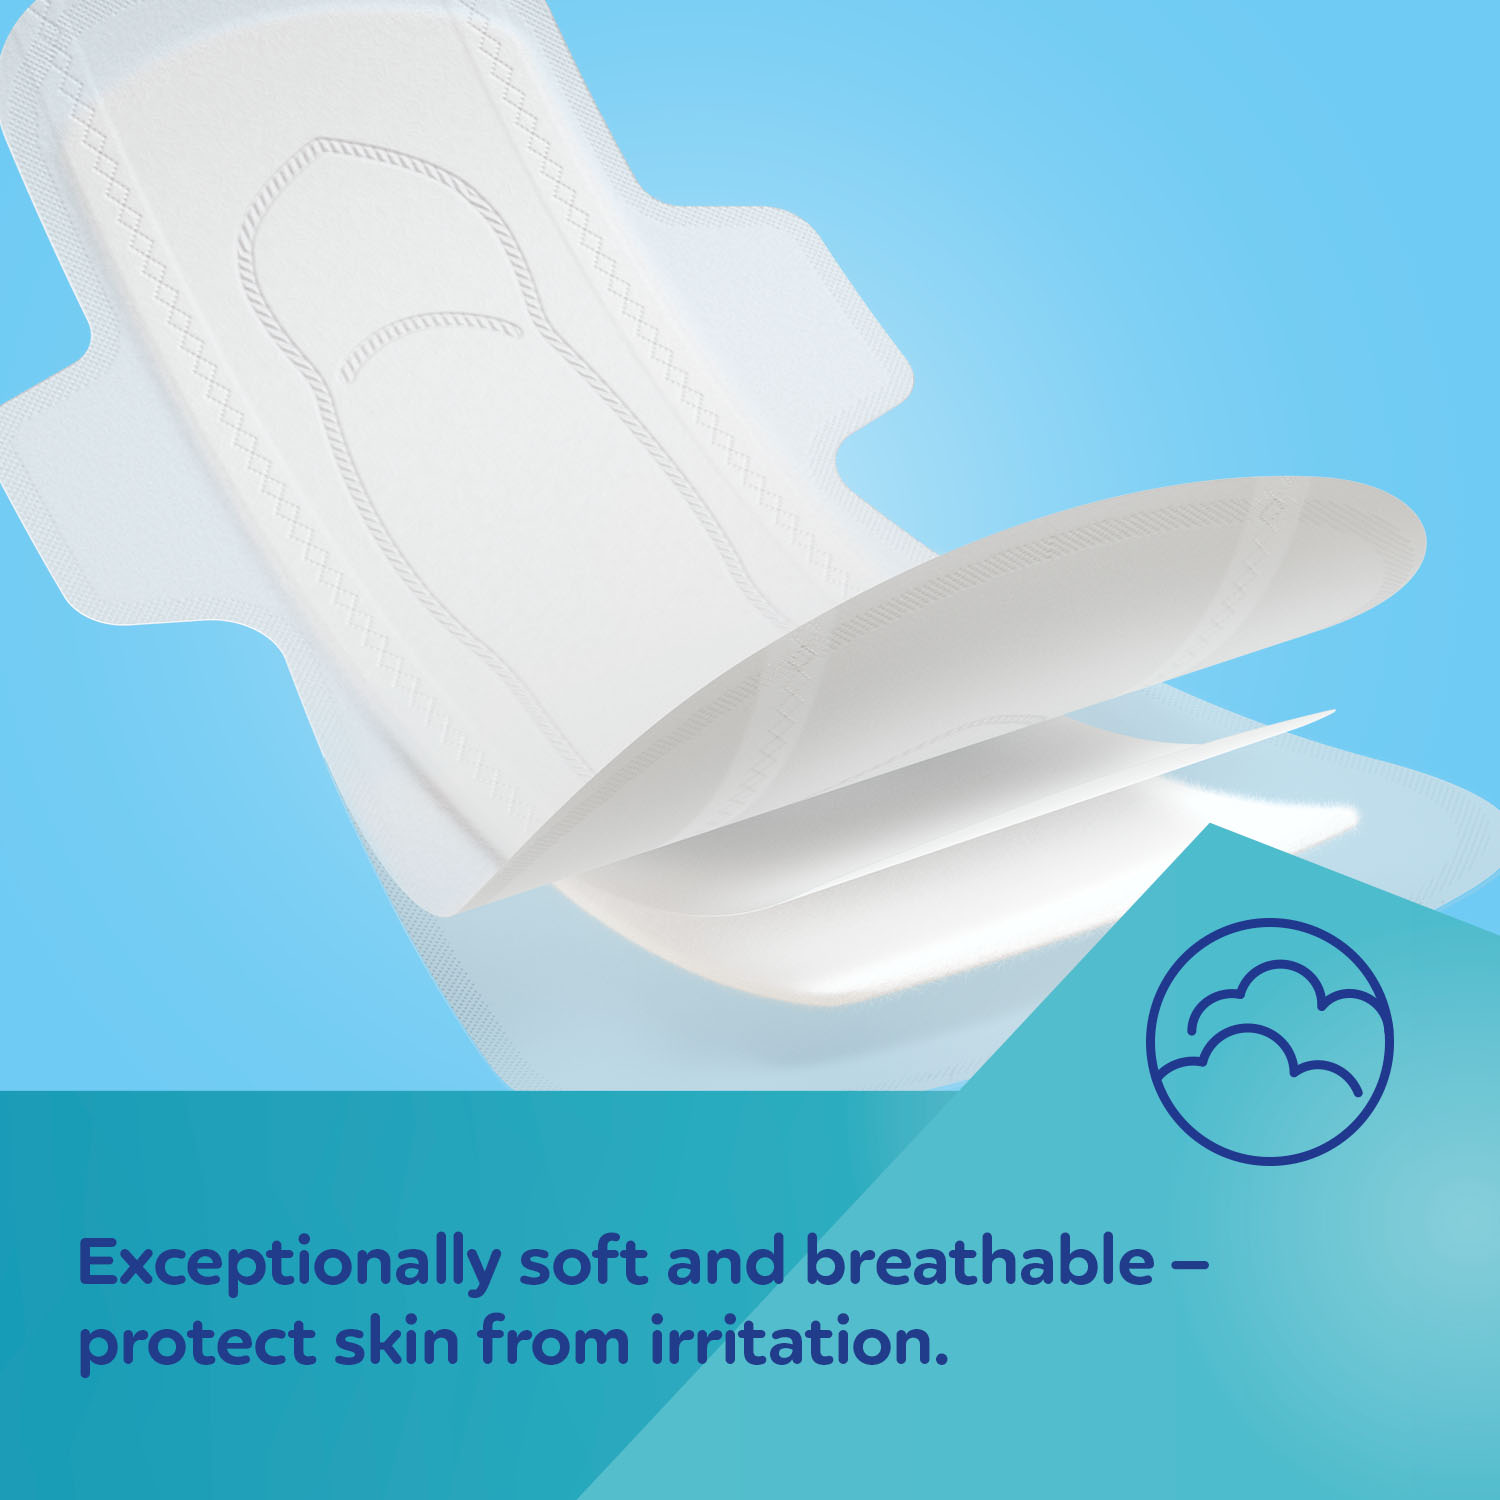 Canpol babies Air Comfort Superabsorbent Postpartum Hygiene Pads Serviettes  hygiéniques de maternité - ®